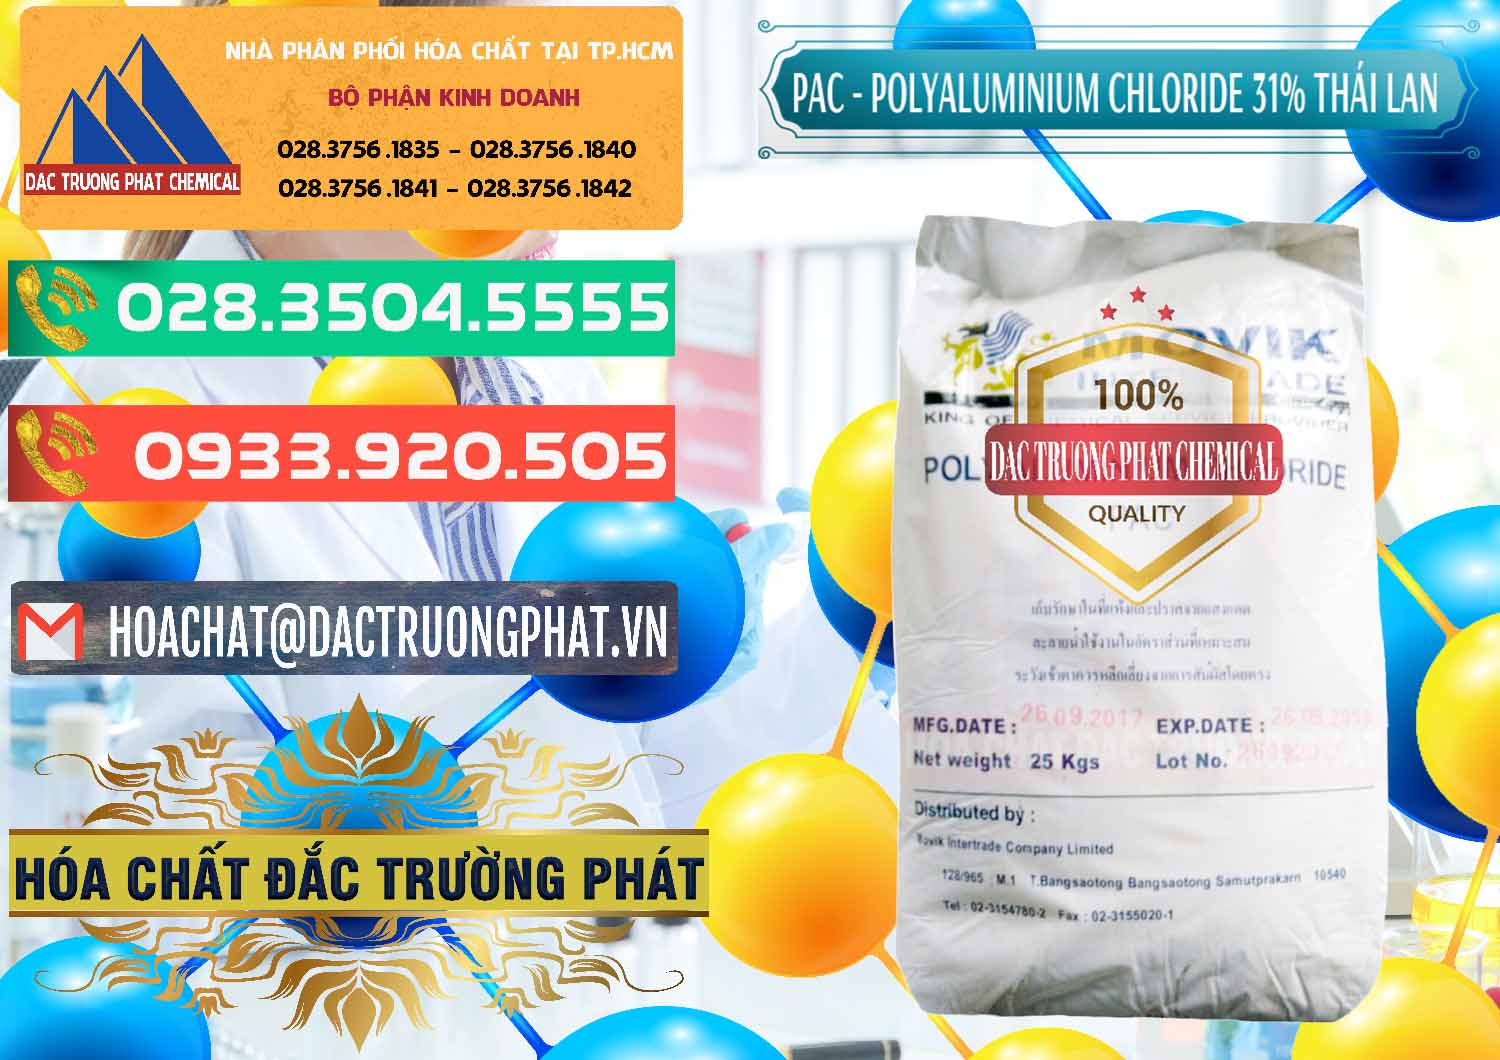 Cty phân phối & bán PAC - Polyaluminium Chloride 31% Thái Lan Thailand - 0469 - Cty chuyên phân phối và kinh doanh hóa chất tại TP.HCM - congtyhoachat.com.vn